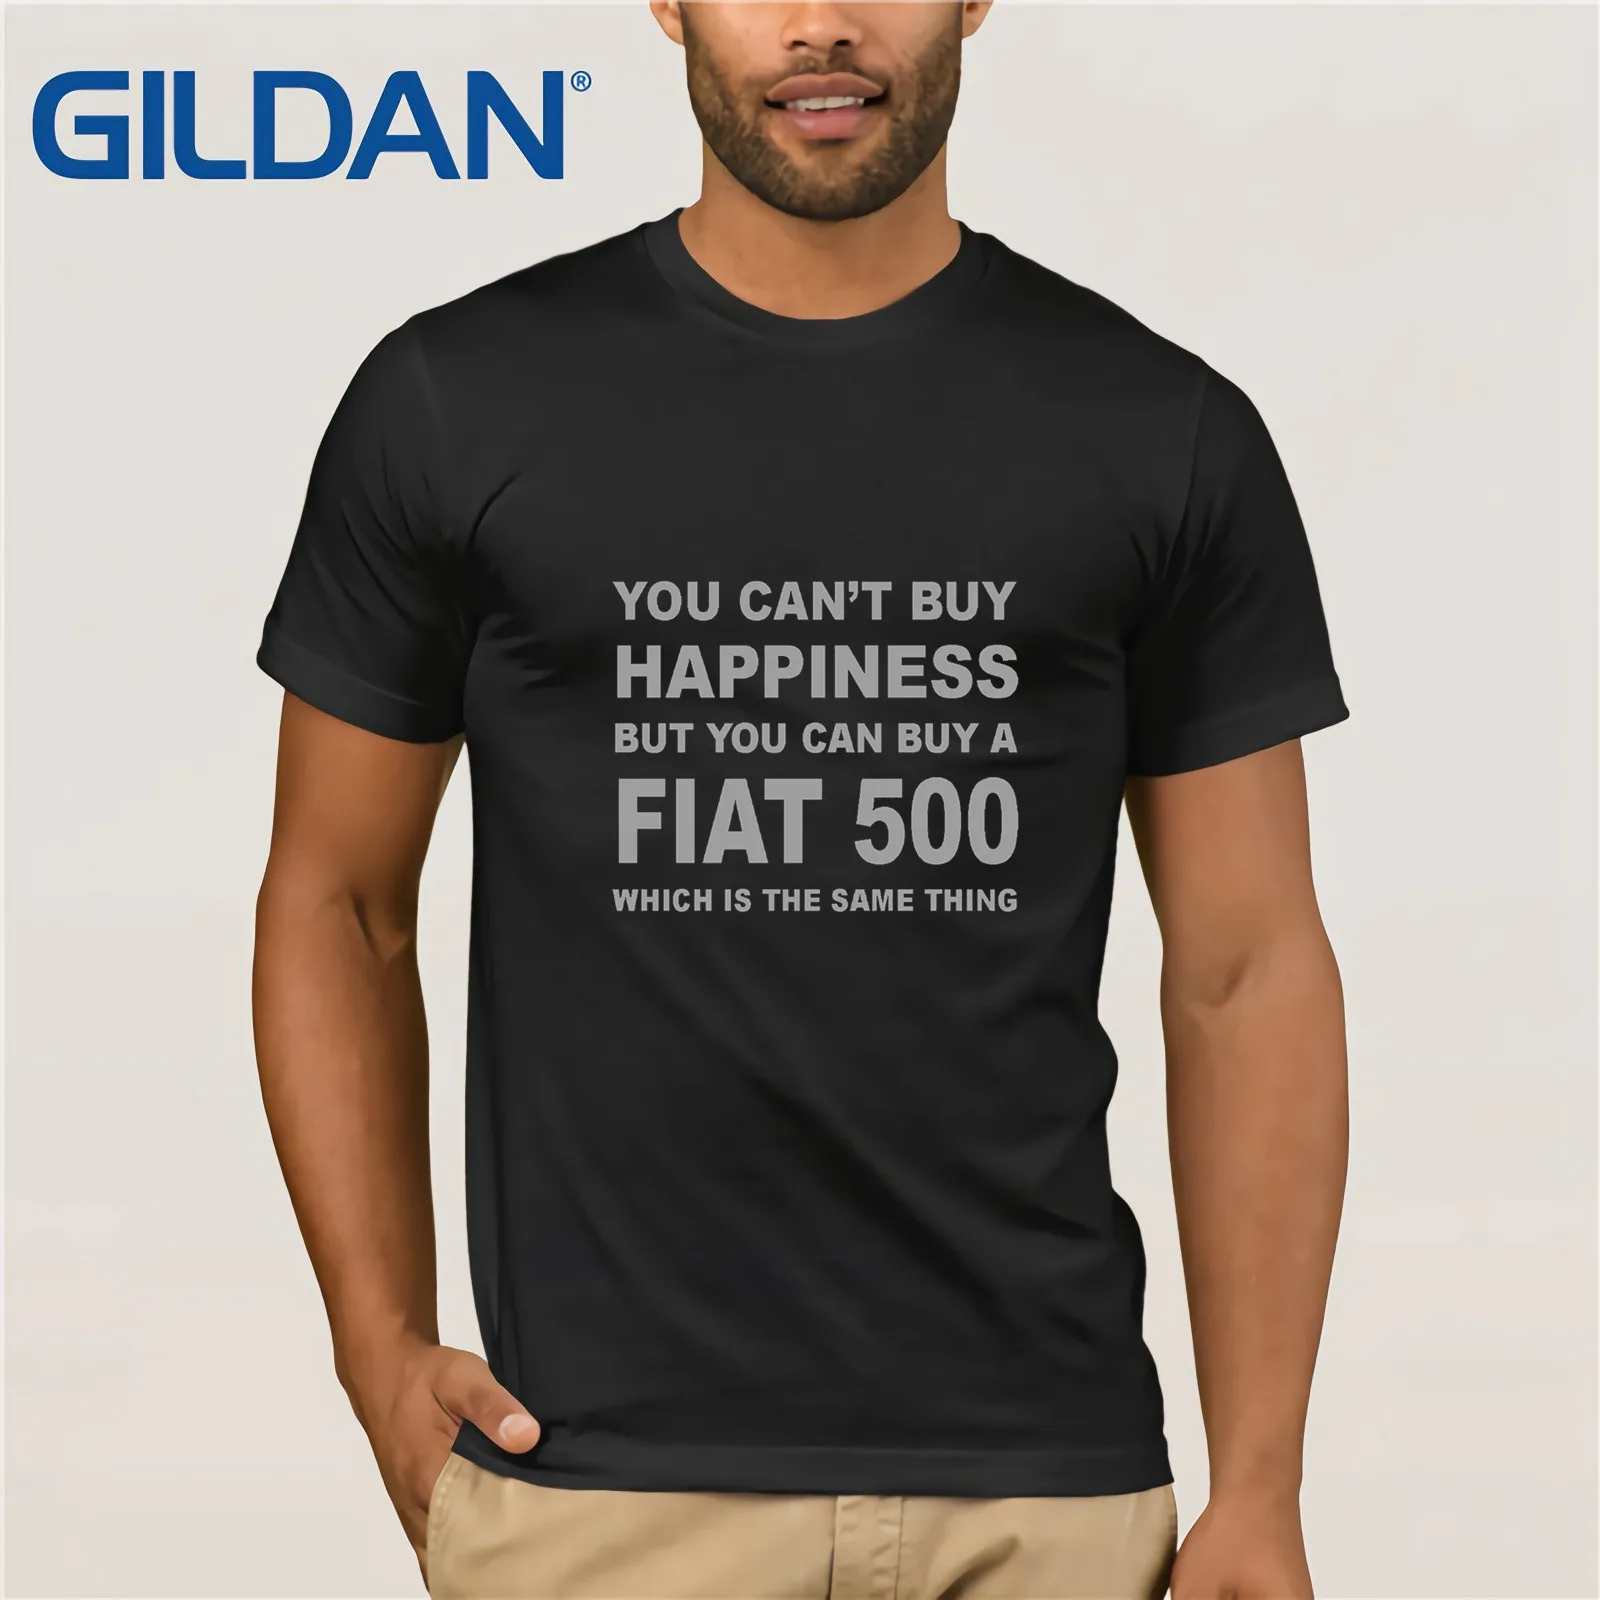 Футболка Fiat 500 футболка с забавным автомобилем размеры S-XXL новые футболки